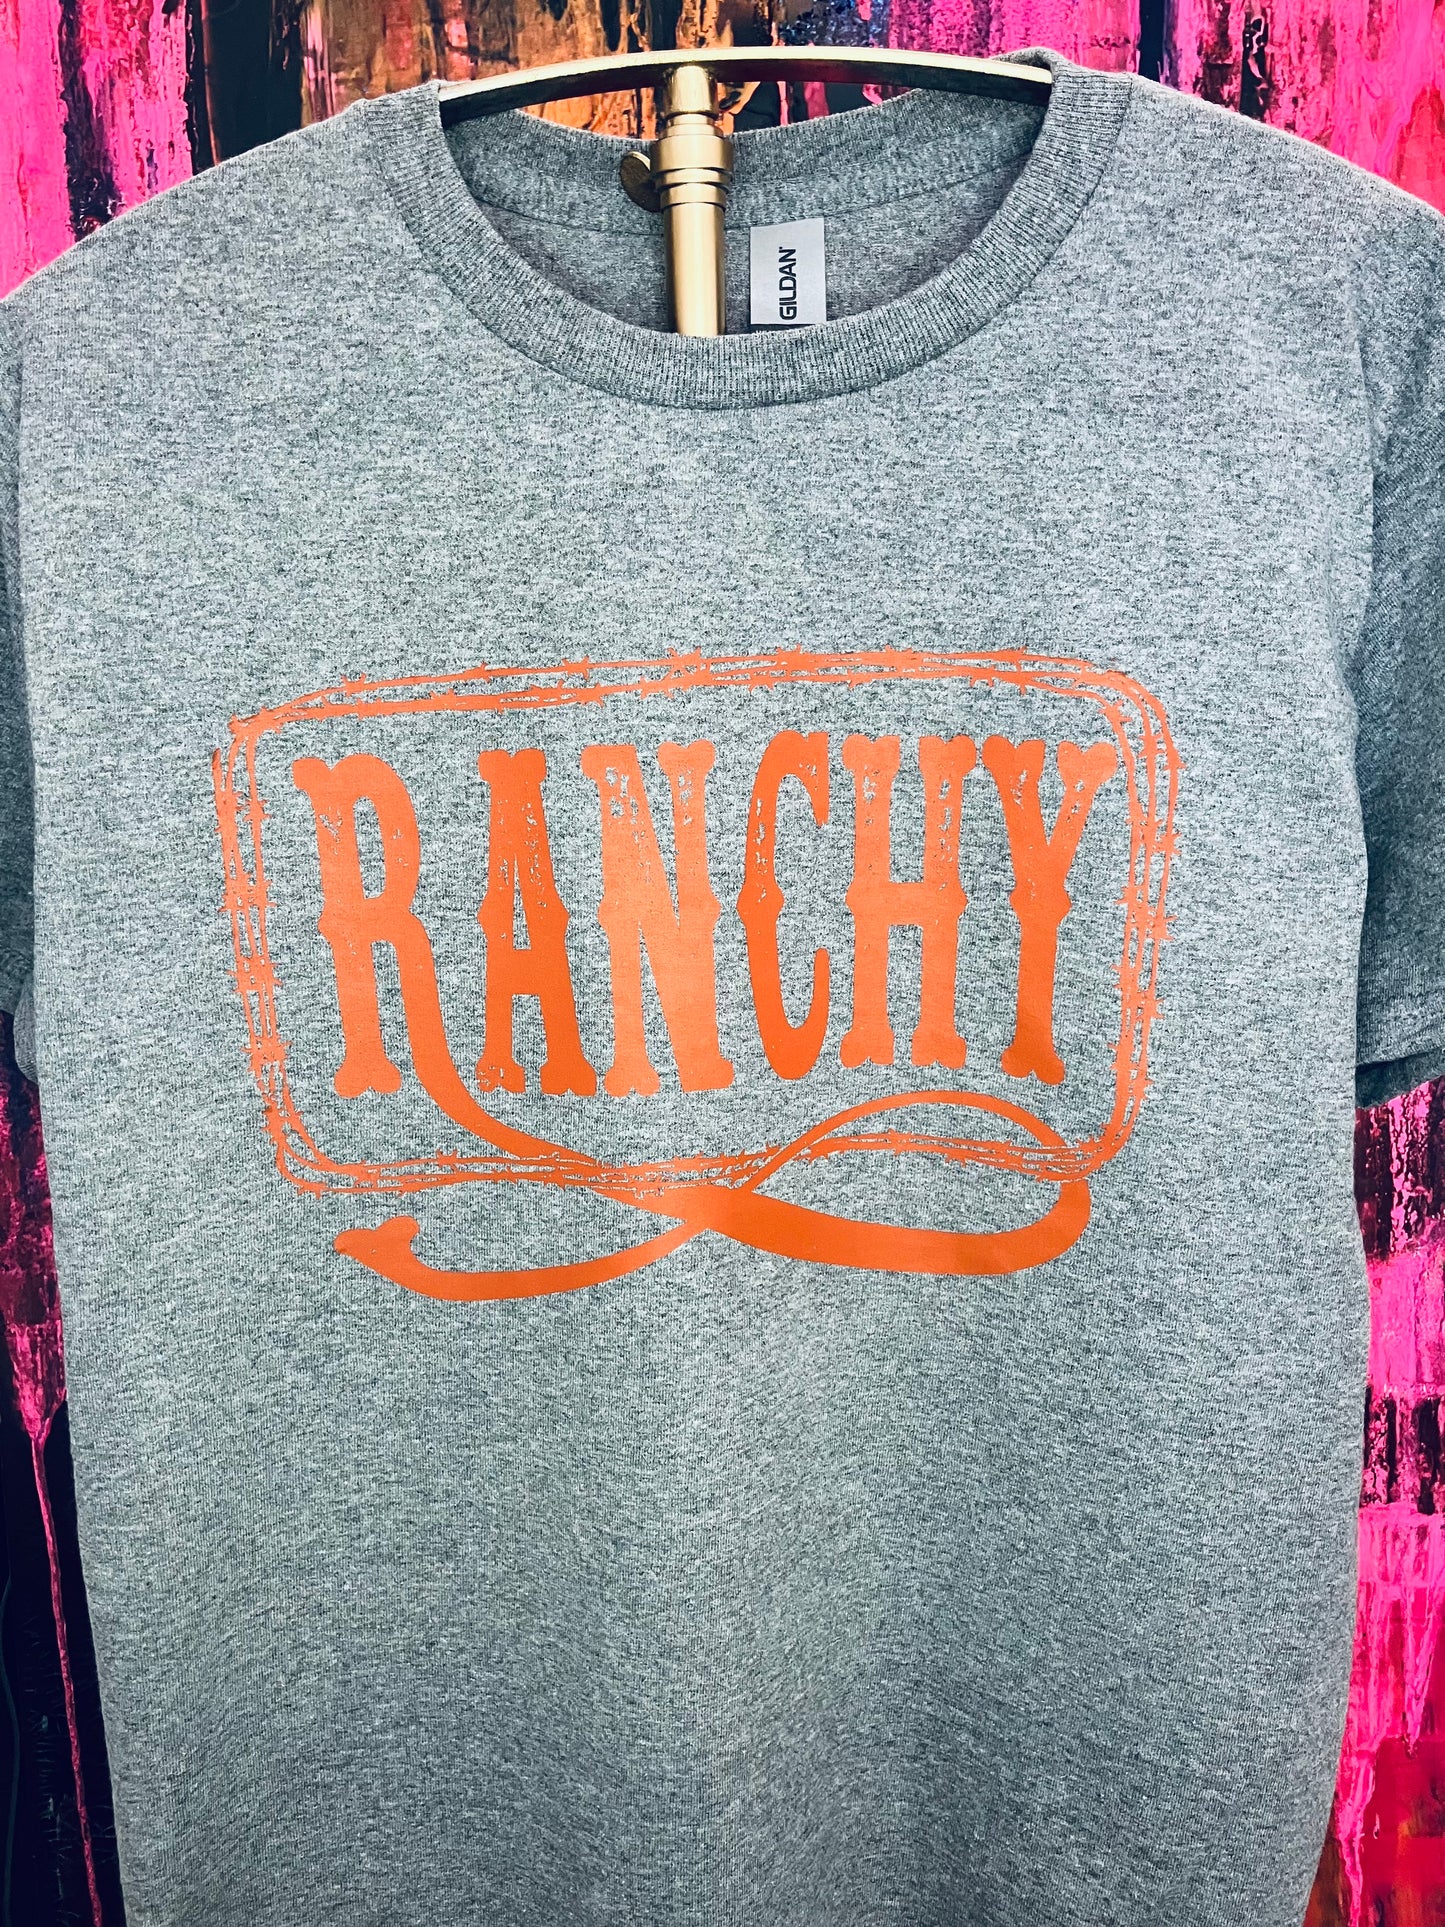 Ranchy II